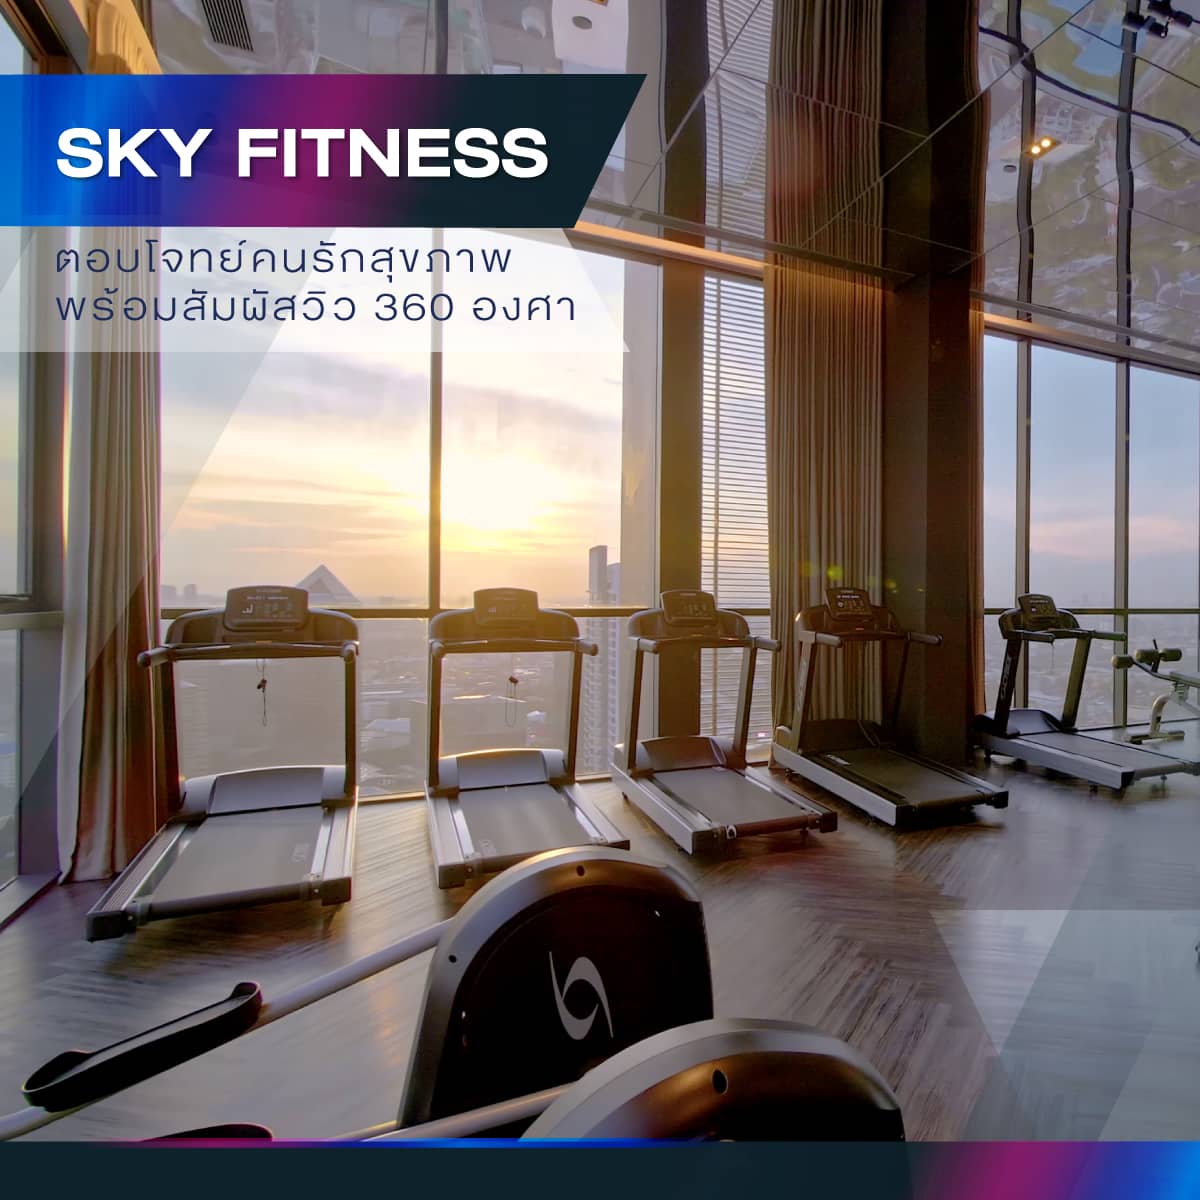 Sky Fitness ตอบโจทย์คนรักสุขภาพ พร้อมสัมผัสวิว 360 องศา